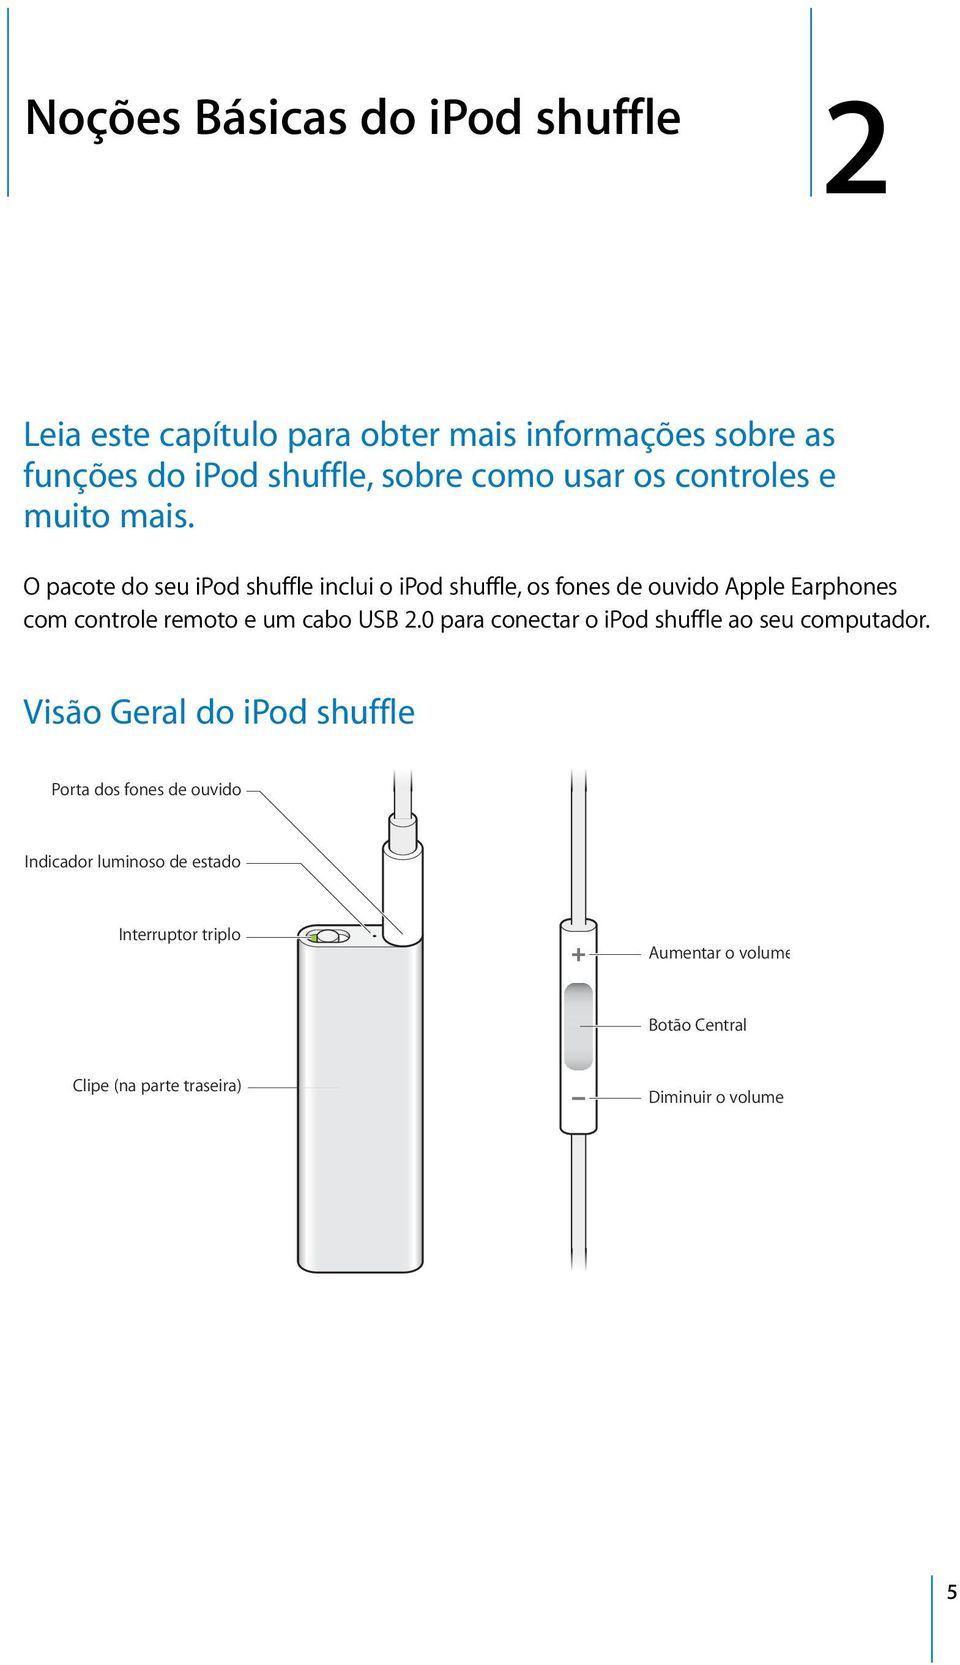 O pacote do seu ipod shuffle inclui o ipod shuffle, os fones de ouvido Apple Earphones com controle remoto e um cabo USB 2.